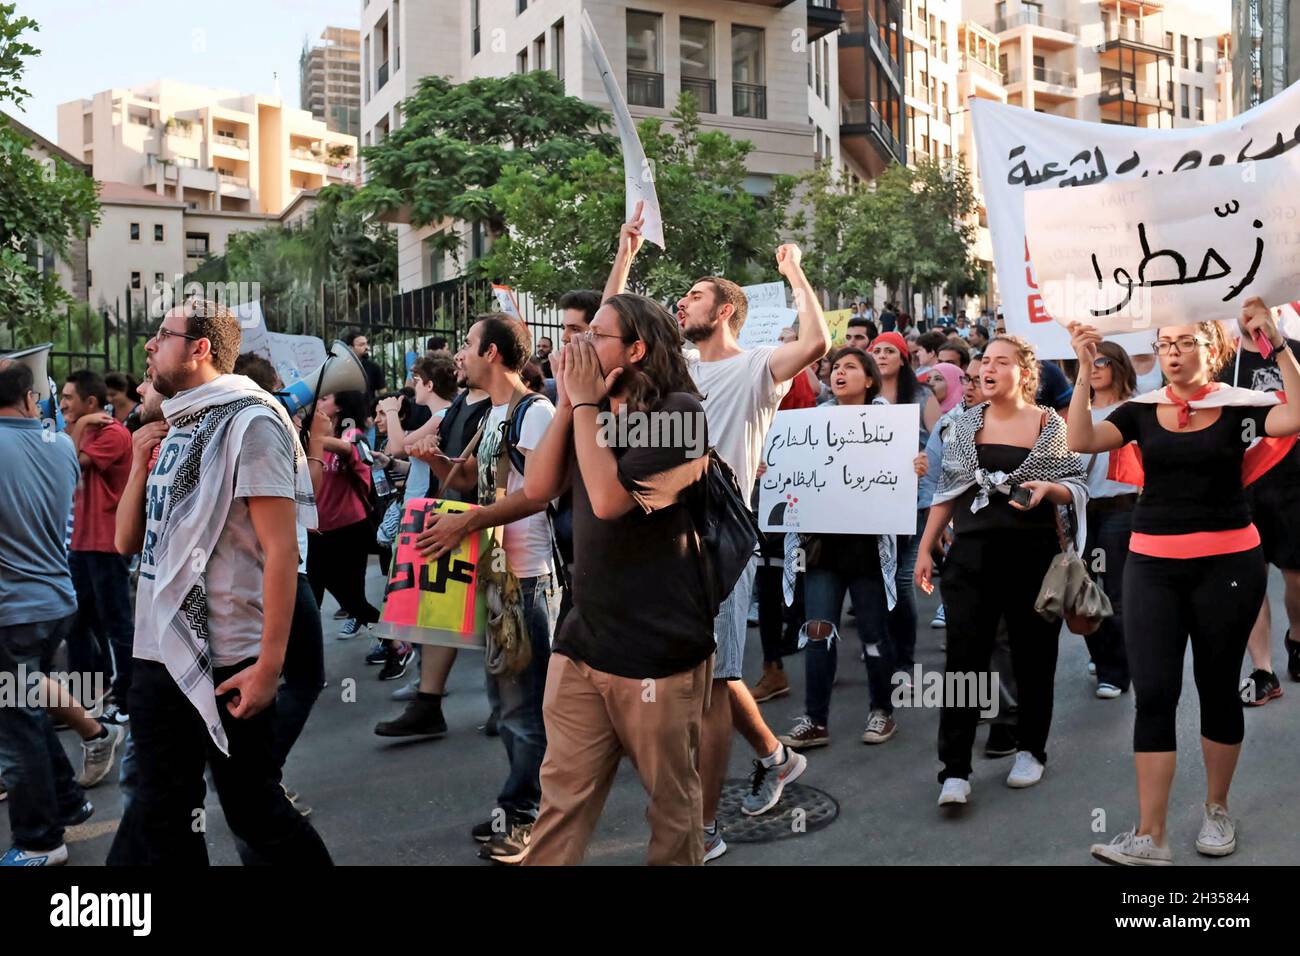 Les manifestants défilent dans les rues de Beyrouth, au Liban, une scène commune en raison de la corruption endémique du gouvernement. Banque D'Images